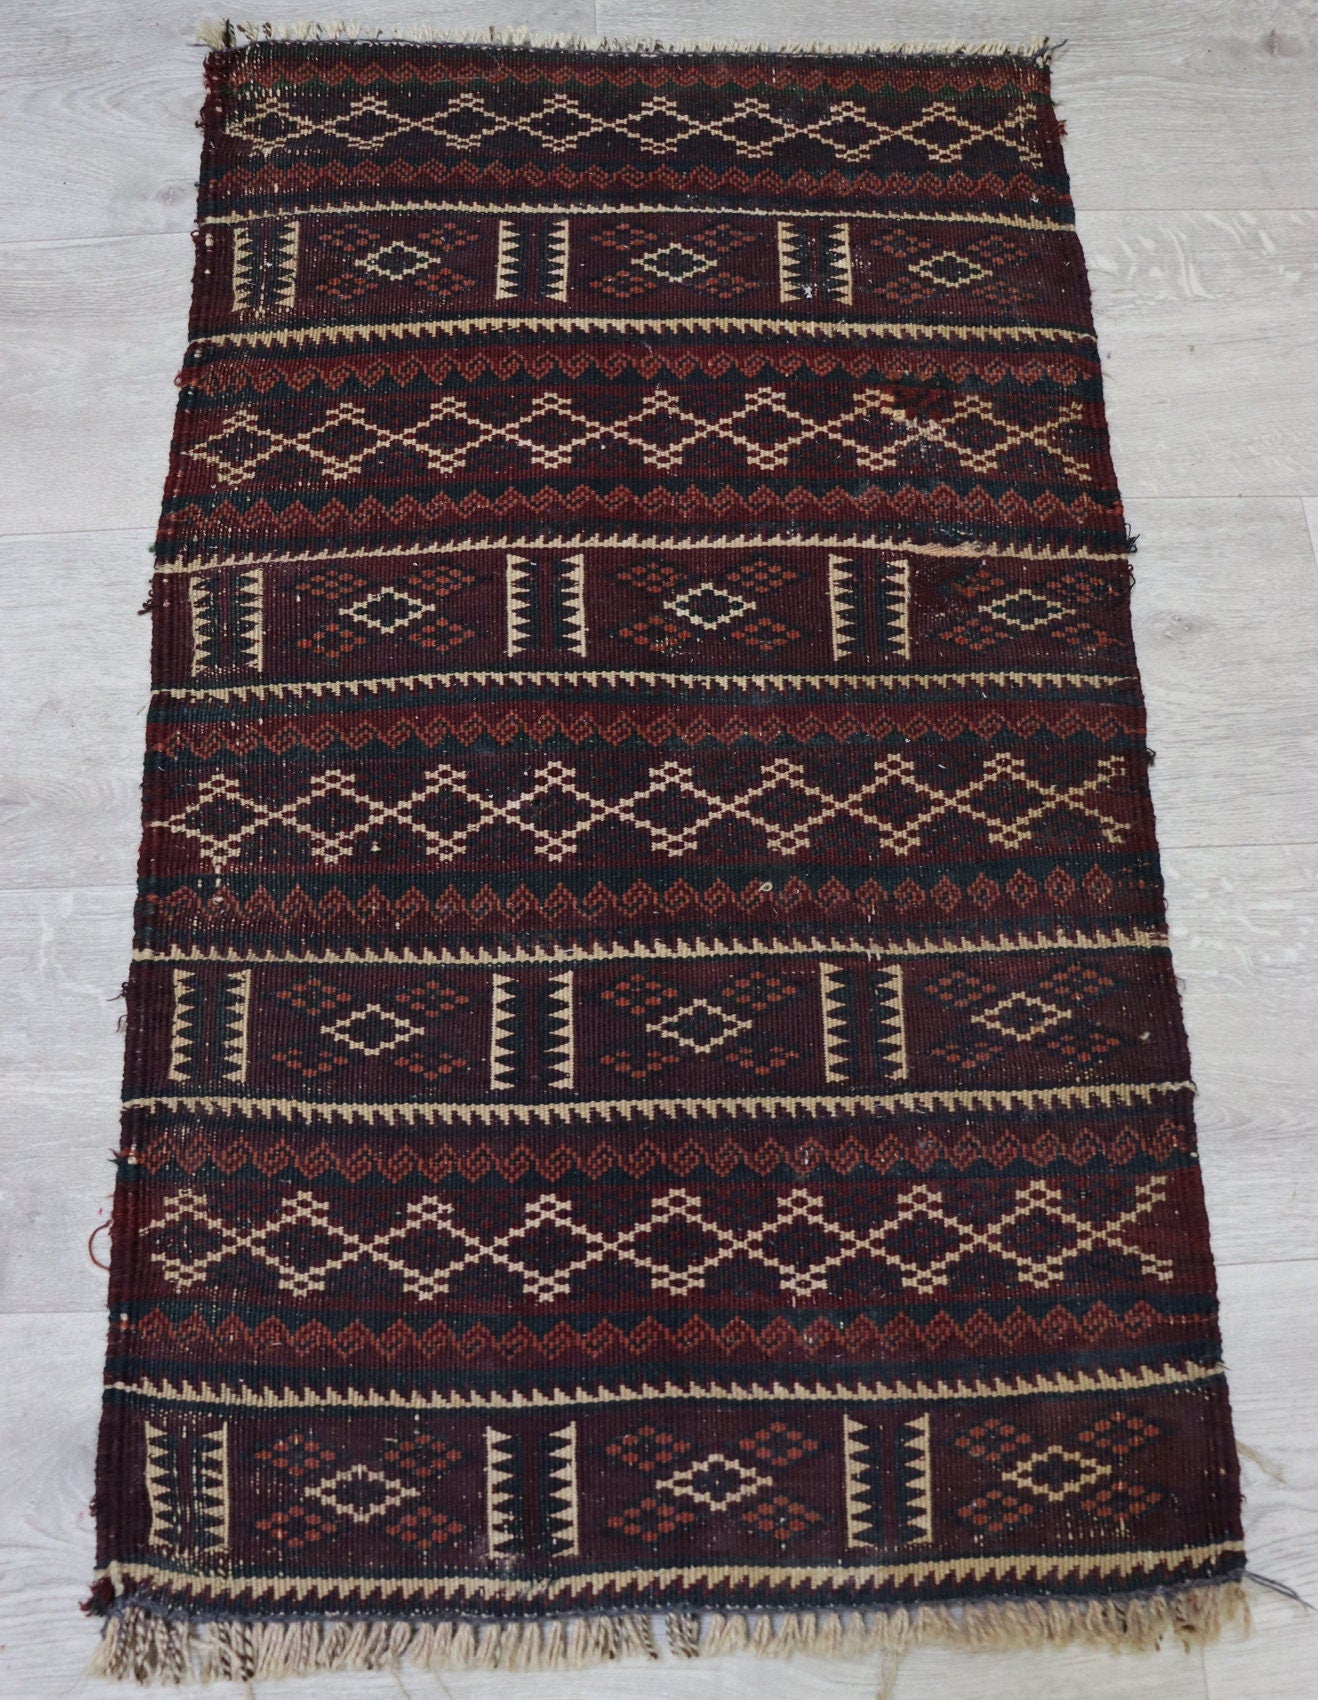 88x50 cm Antik orient handgewebte Teppich Nomaden Baluch sumakh kelim afghan Beloch kilim Nr-KL/2  Orientsbazar   